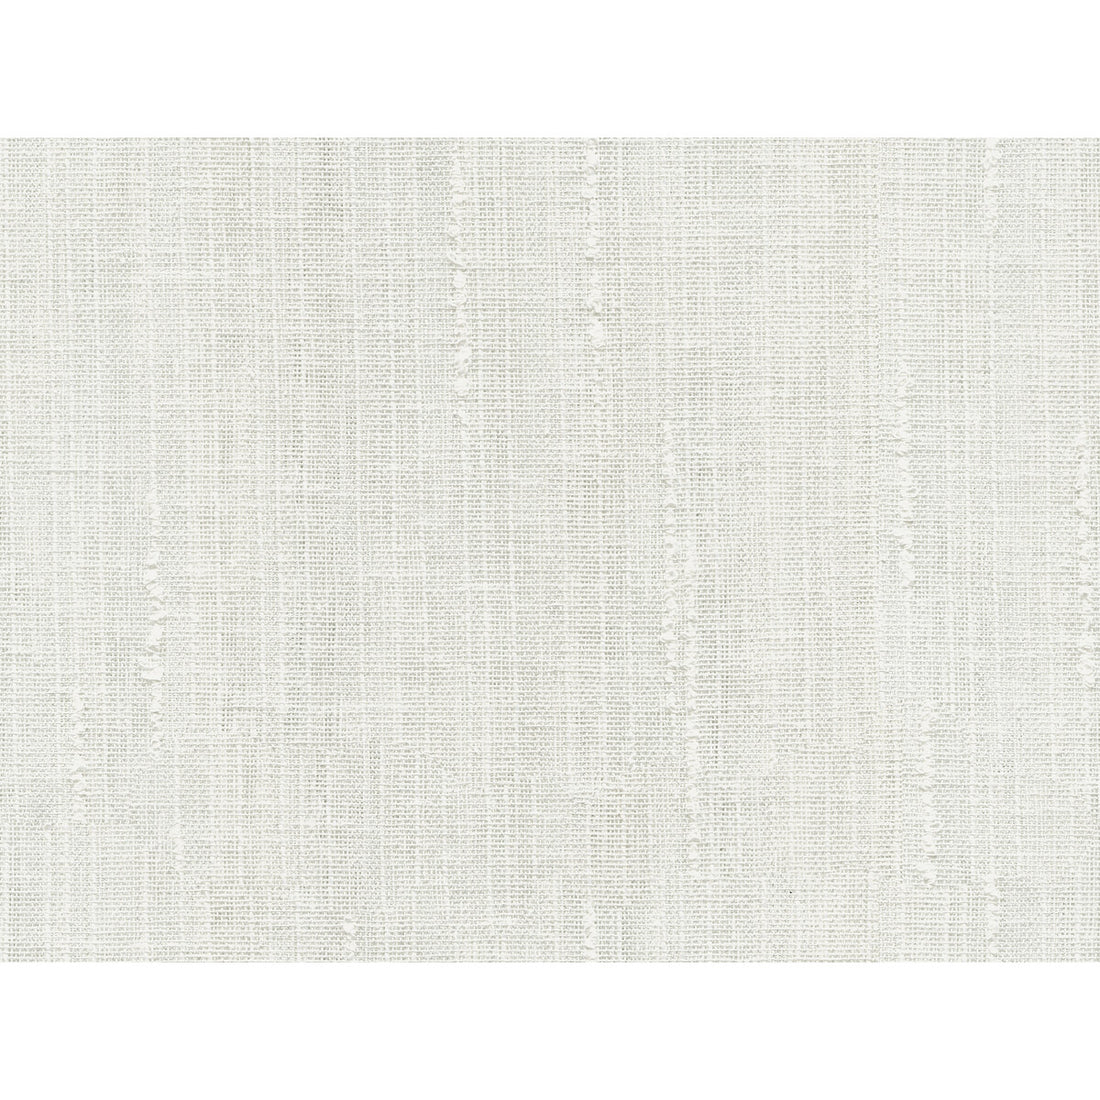 Kravet Basics fabric in 4493-1 color - pattern 4493.1.0 - by Kravet Basics